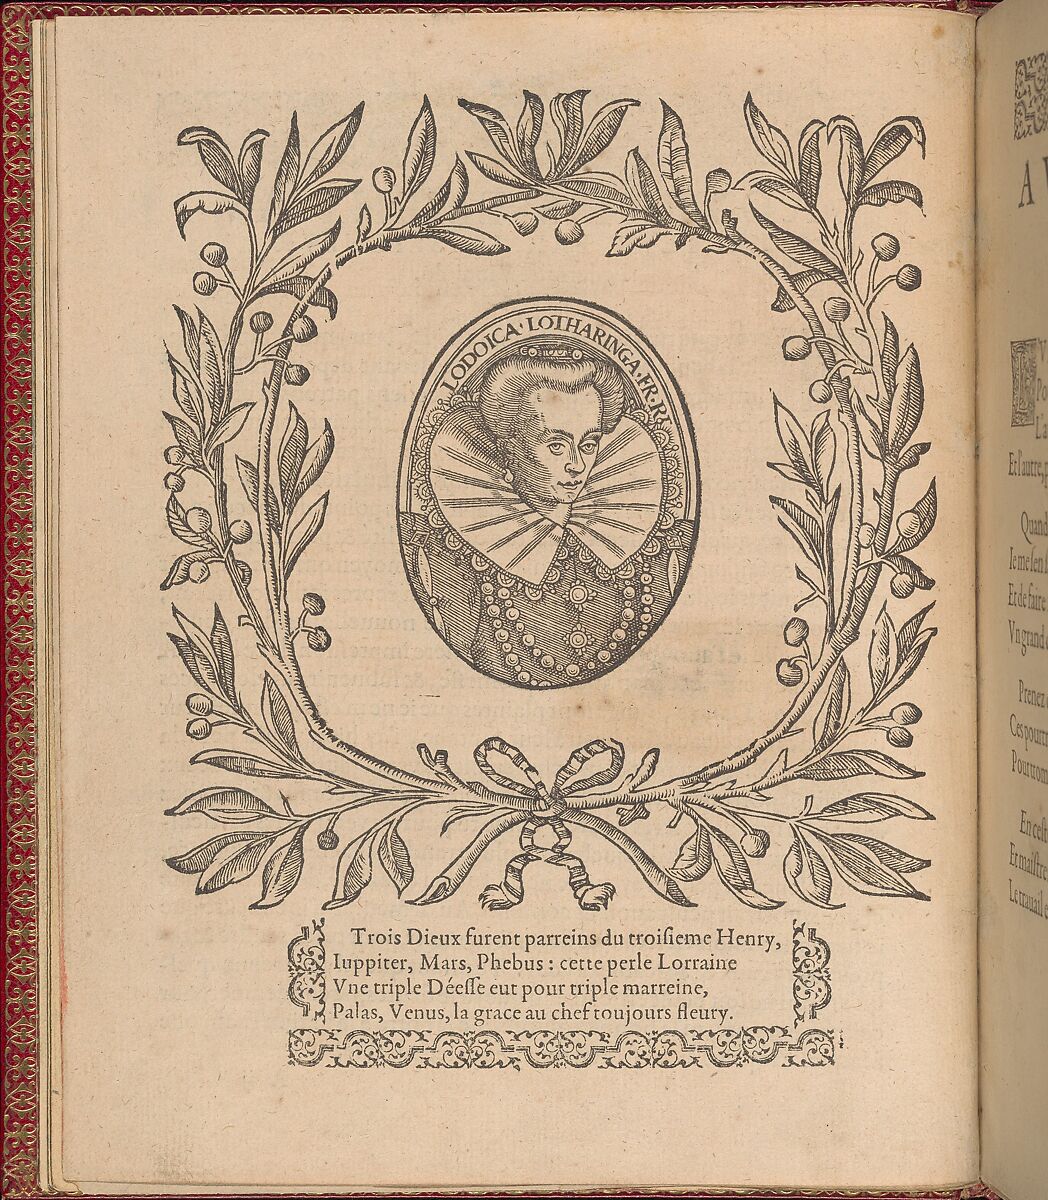 Les Singuliers et Nouveaux Portraicts... page 2 (verso), Federico de Vinciolo (Italian, active Paris, ca. 1587–99), Woodcut 